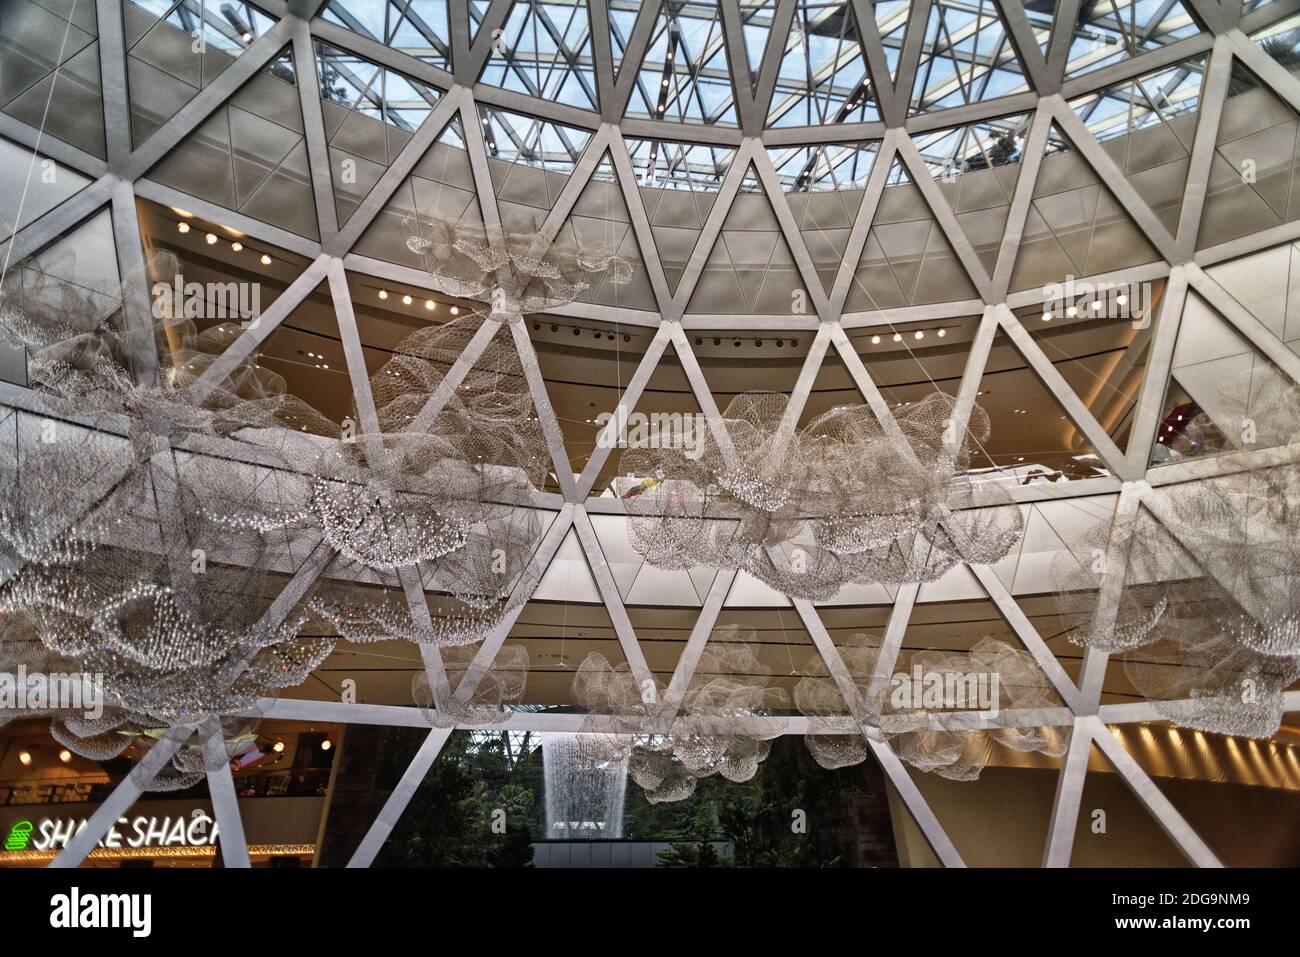 Entrada a The Jewel, un centro comercial con cascada interior, aeropuerto de Singapur, Terminal 2, Changi, Asia Foto de stock